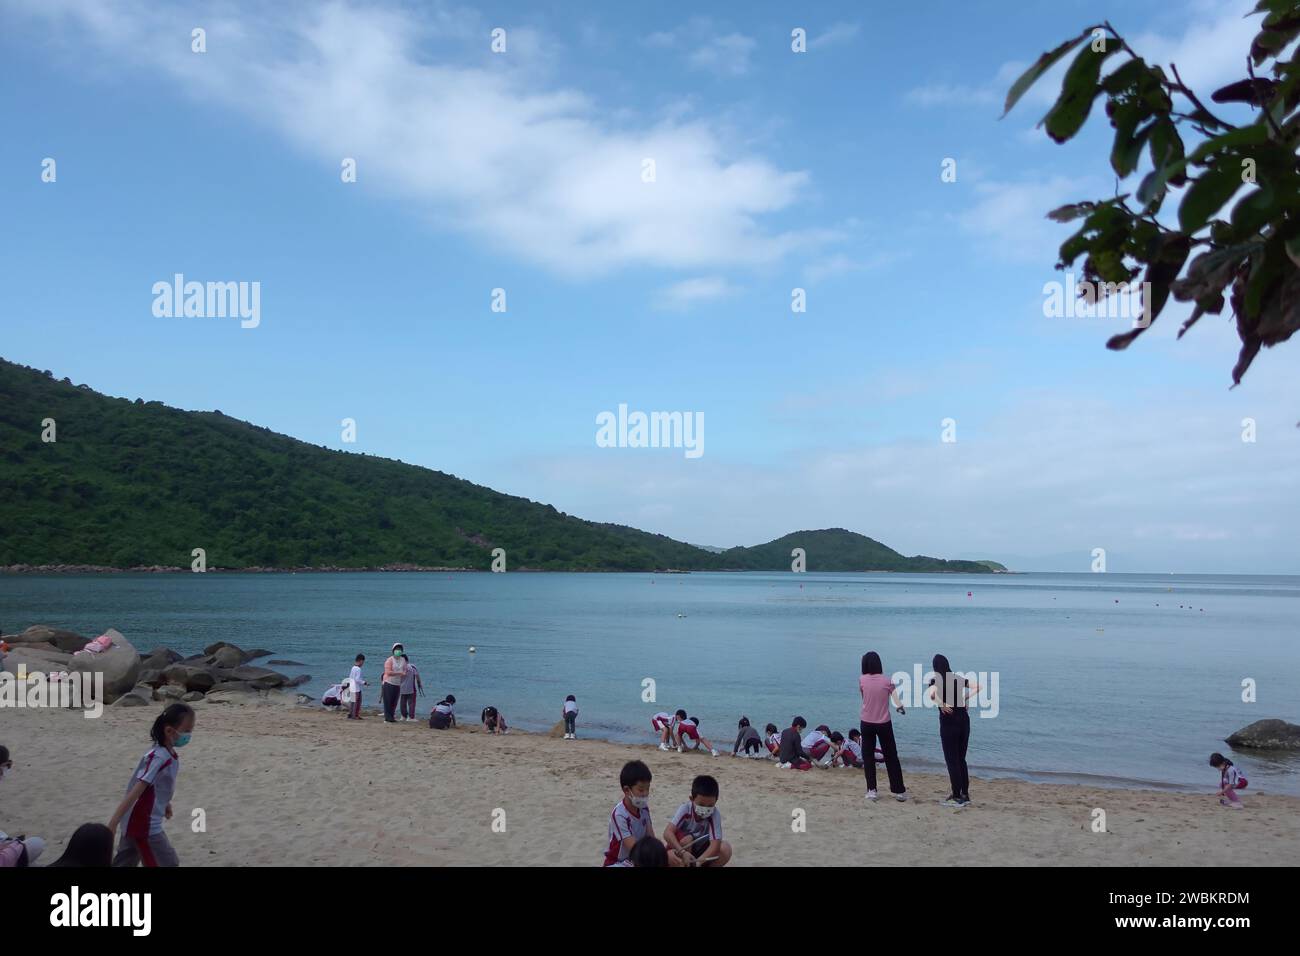 Hong Kong, China - July 12 2022: People play in Hoi Ha Wan beach in Sai Kung, Hong Kong. Stock Photo